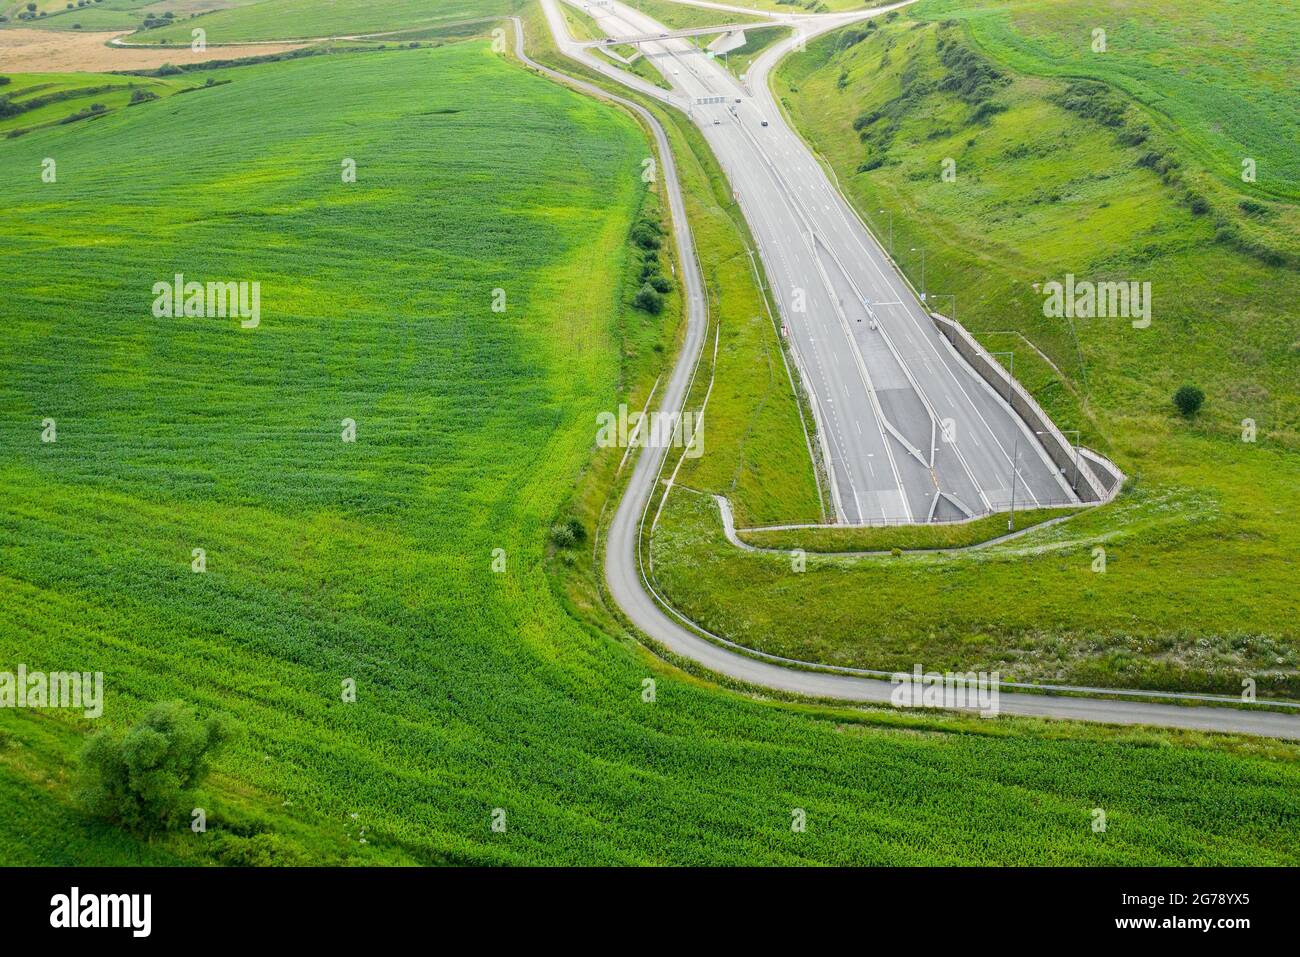 Draufsicht auf den Tunneleingang der Autobahn mit grünem Gras bedeckt Stockfoto